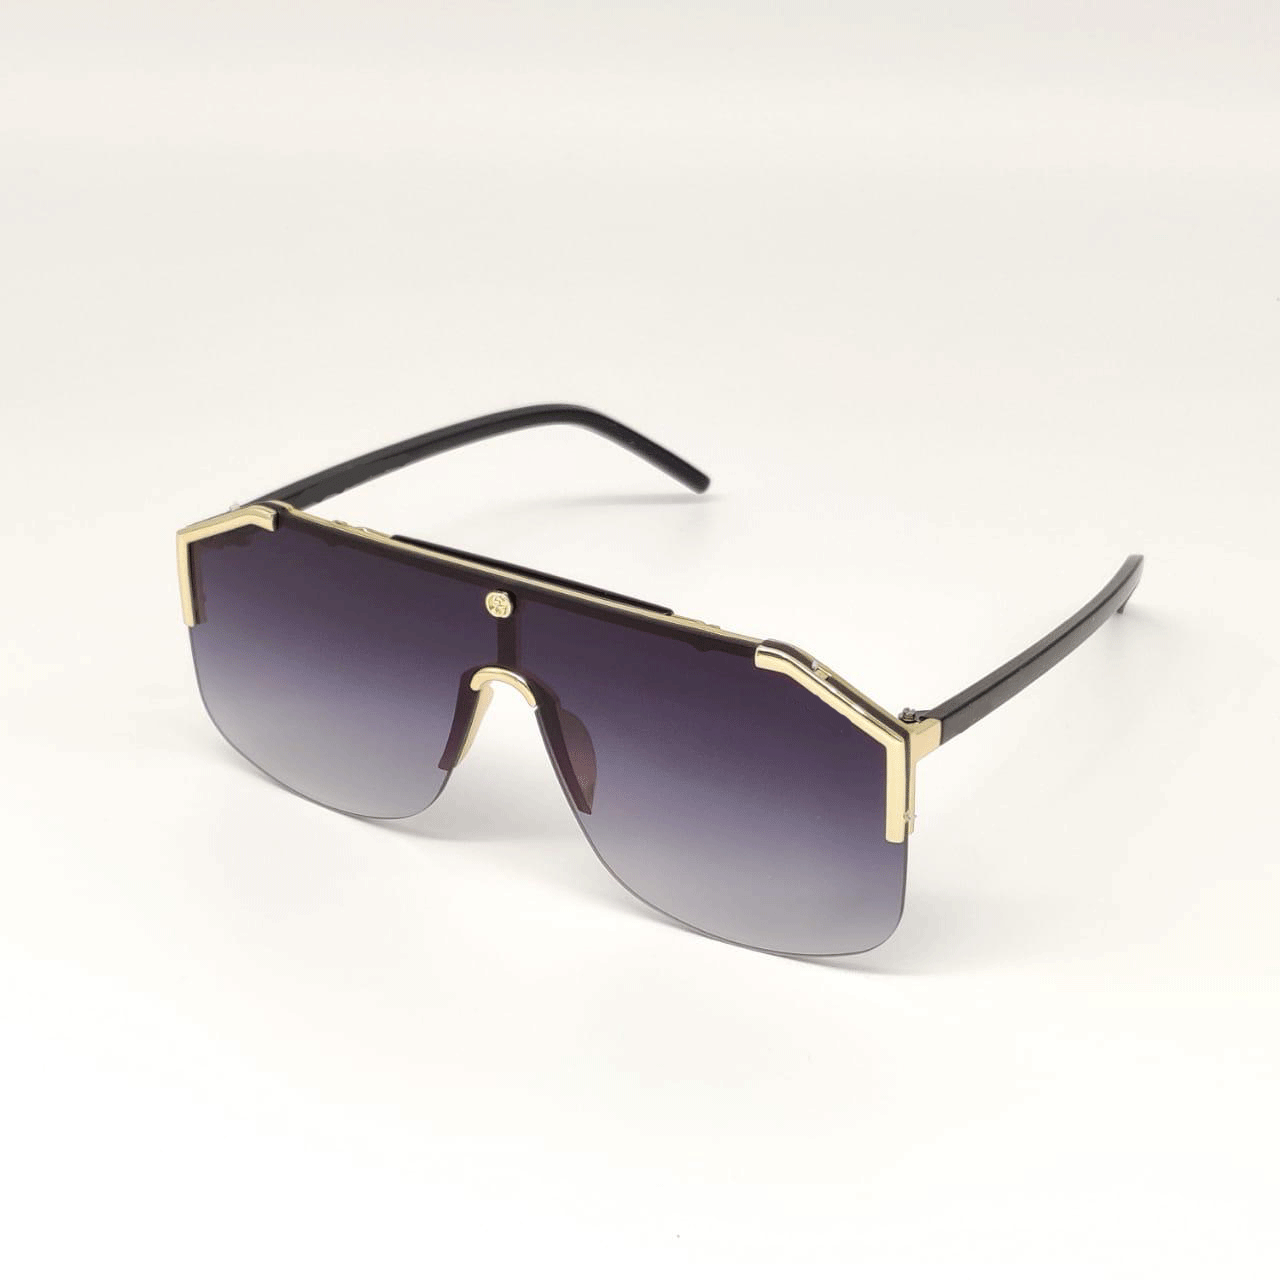 Gucci - Square Frame Rimless Sunglasses - Oro - Gucci Eyewear - Avvenice